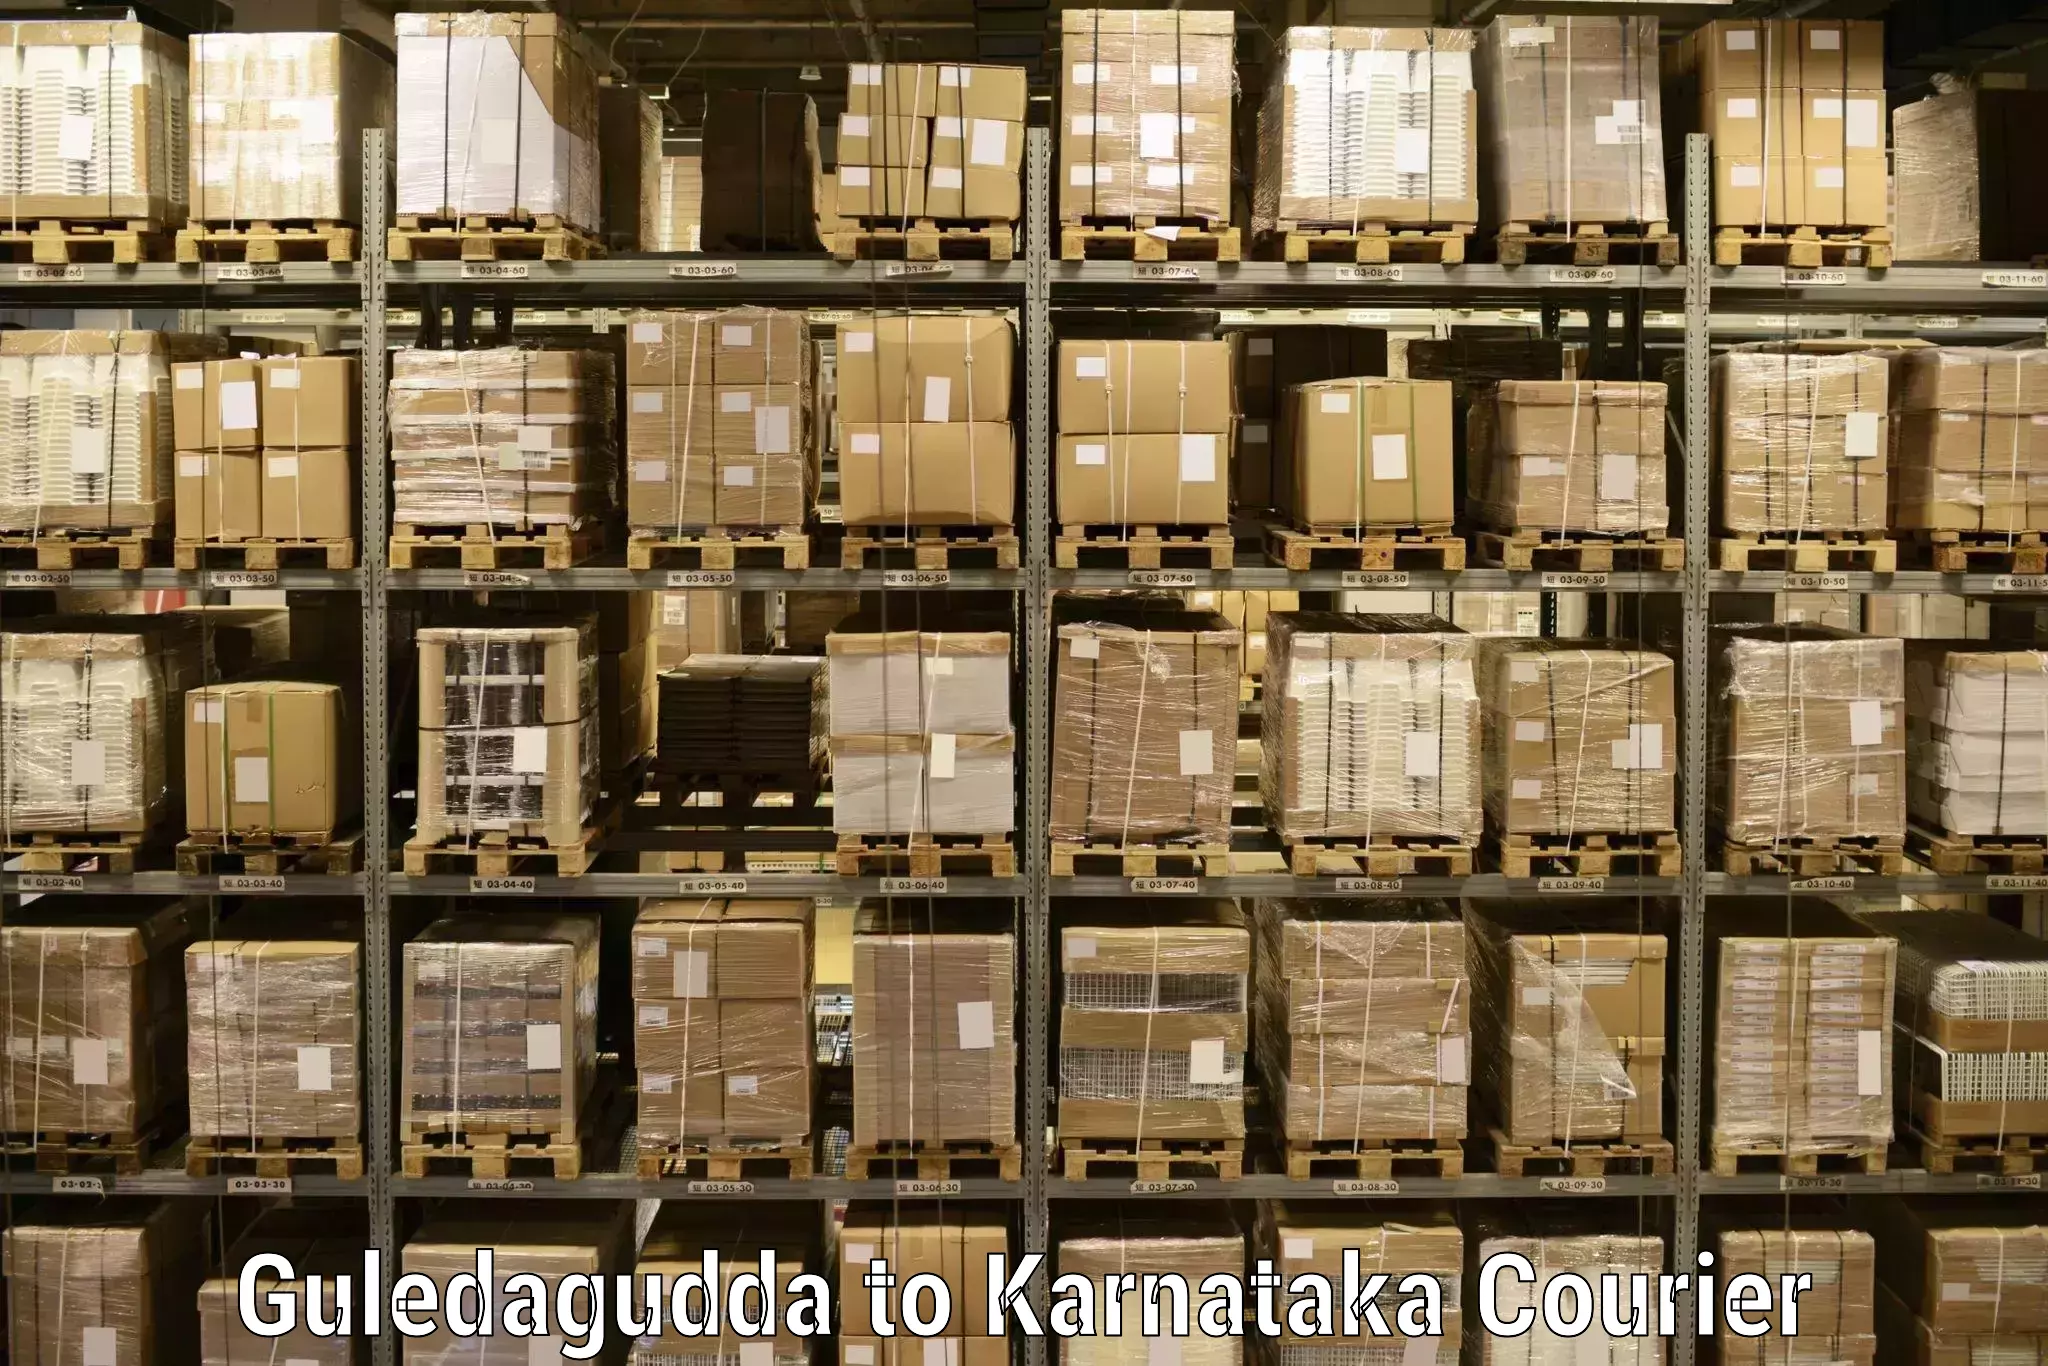 Comprehensive parcel tracking Guledagudda to Chikkamagalur